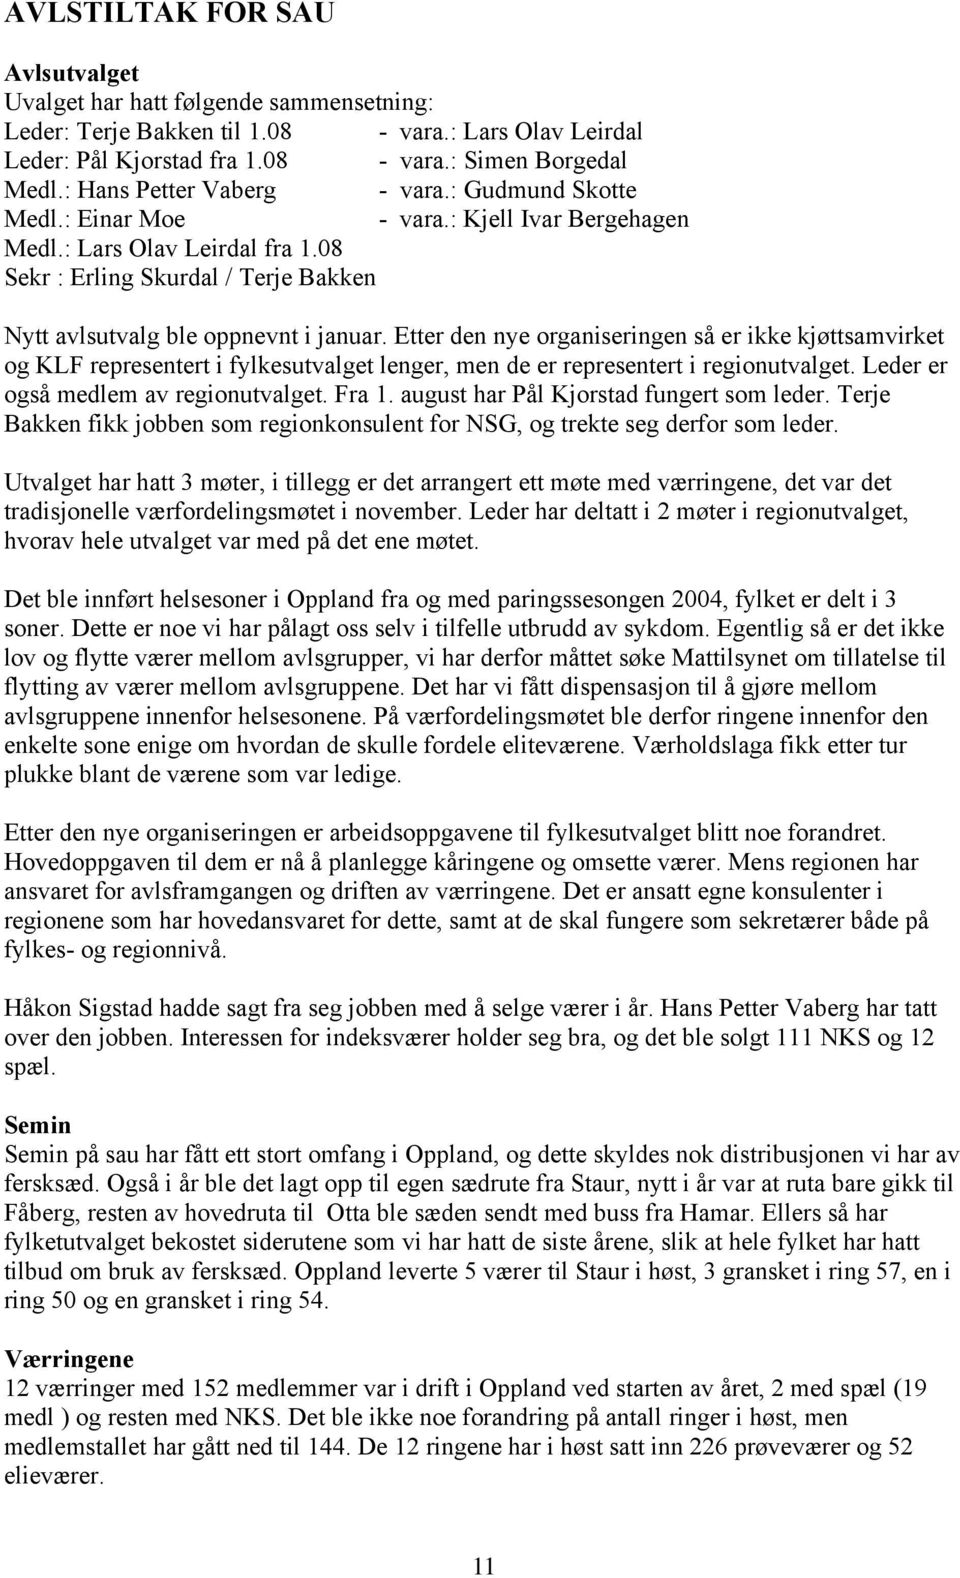 08 Sekr : Erling Skurdal / Terje Bakken Nytt avlsutvalg ble oppnevnt i januar.